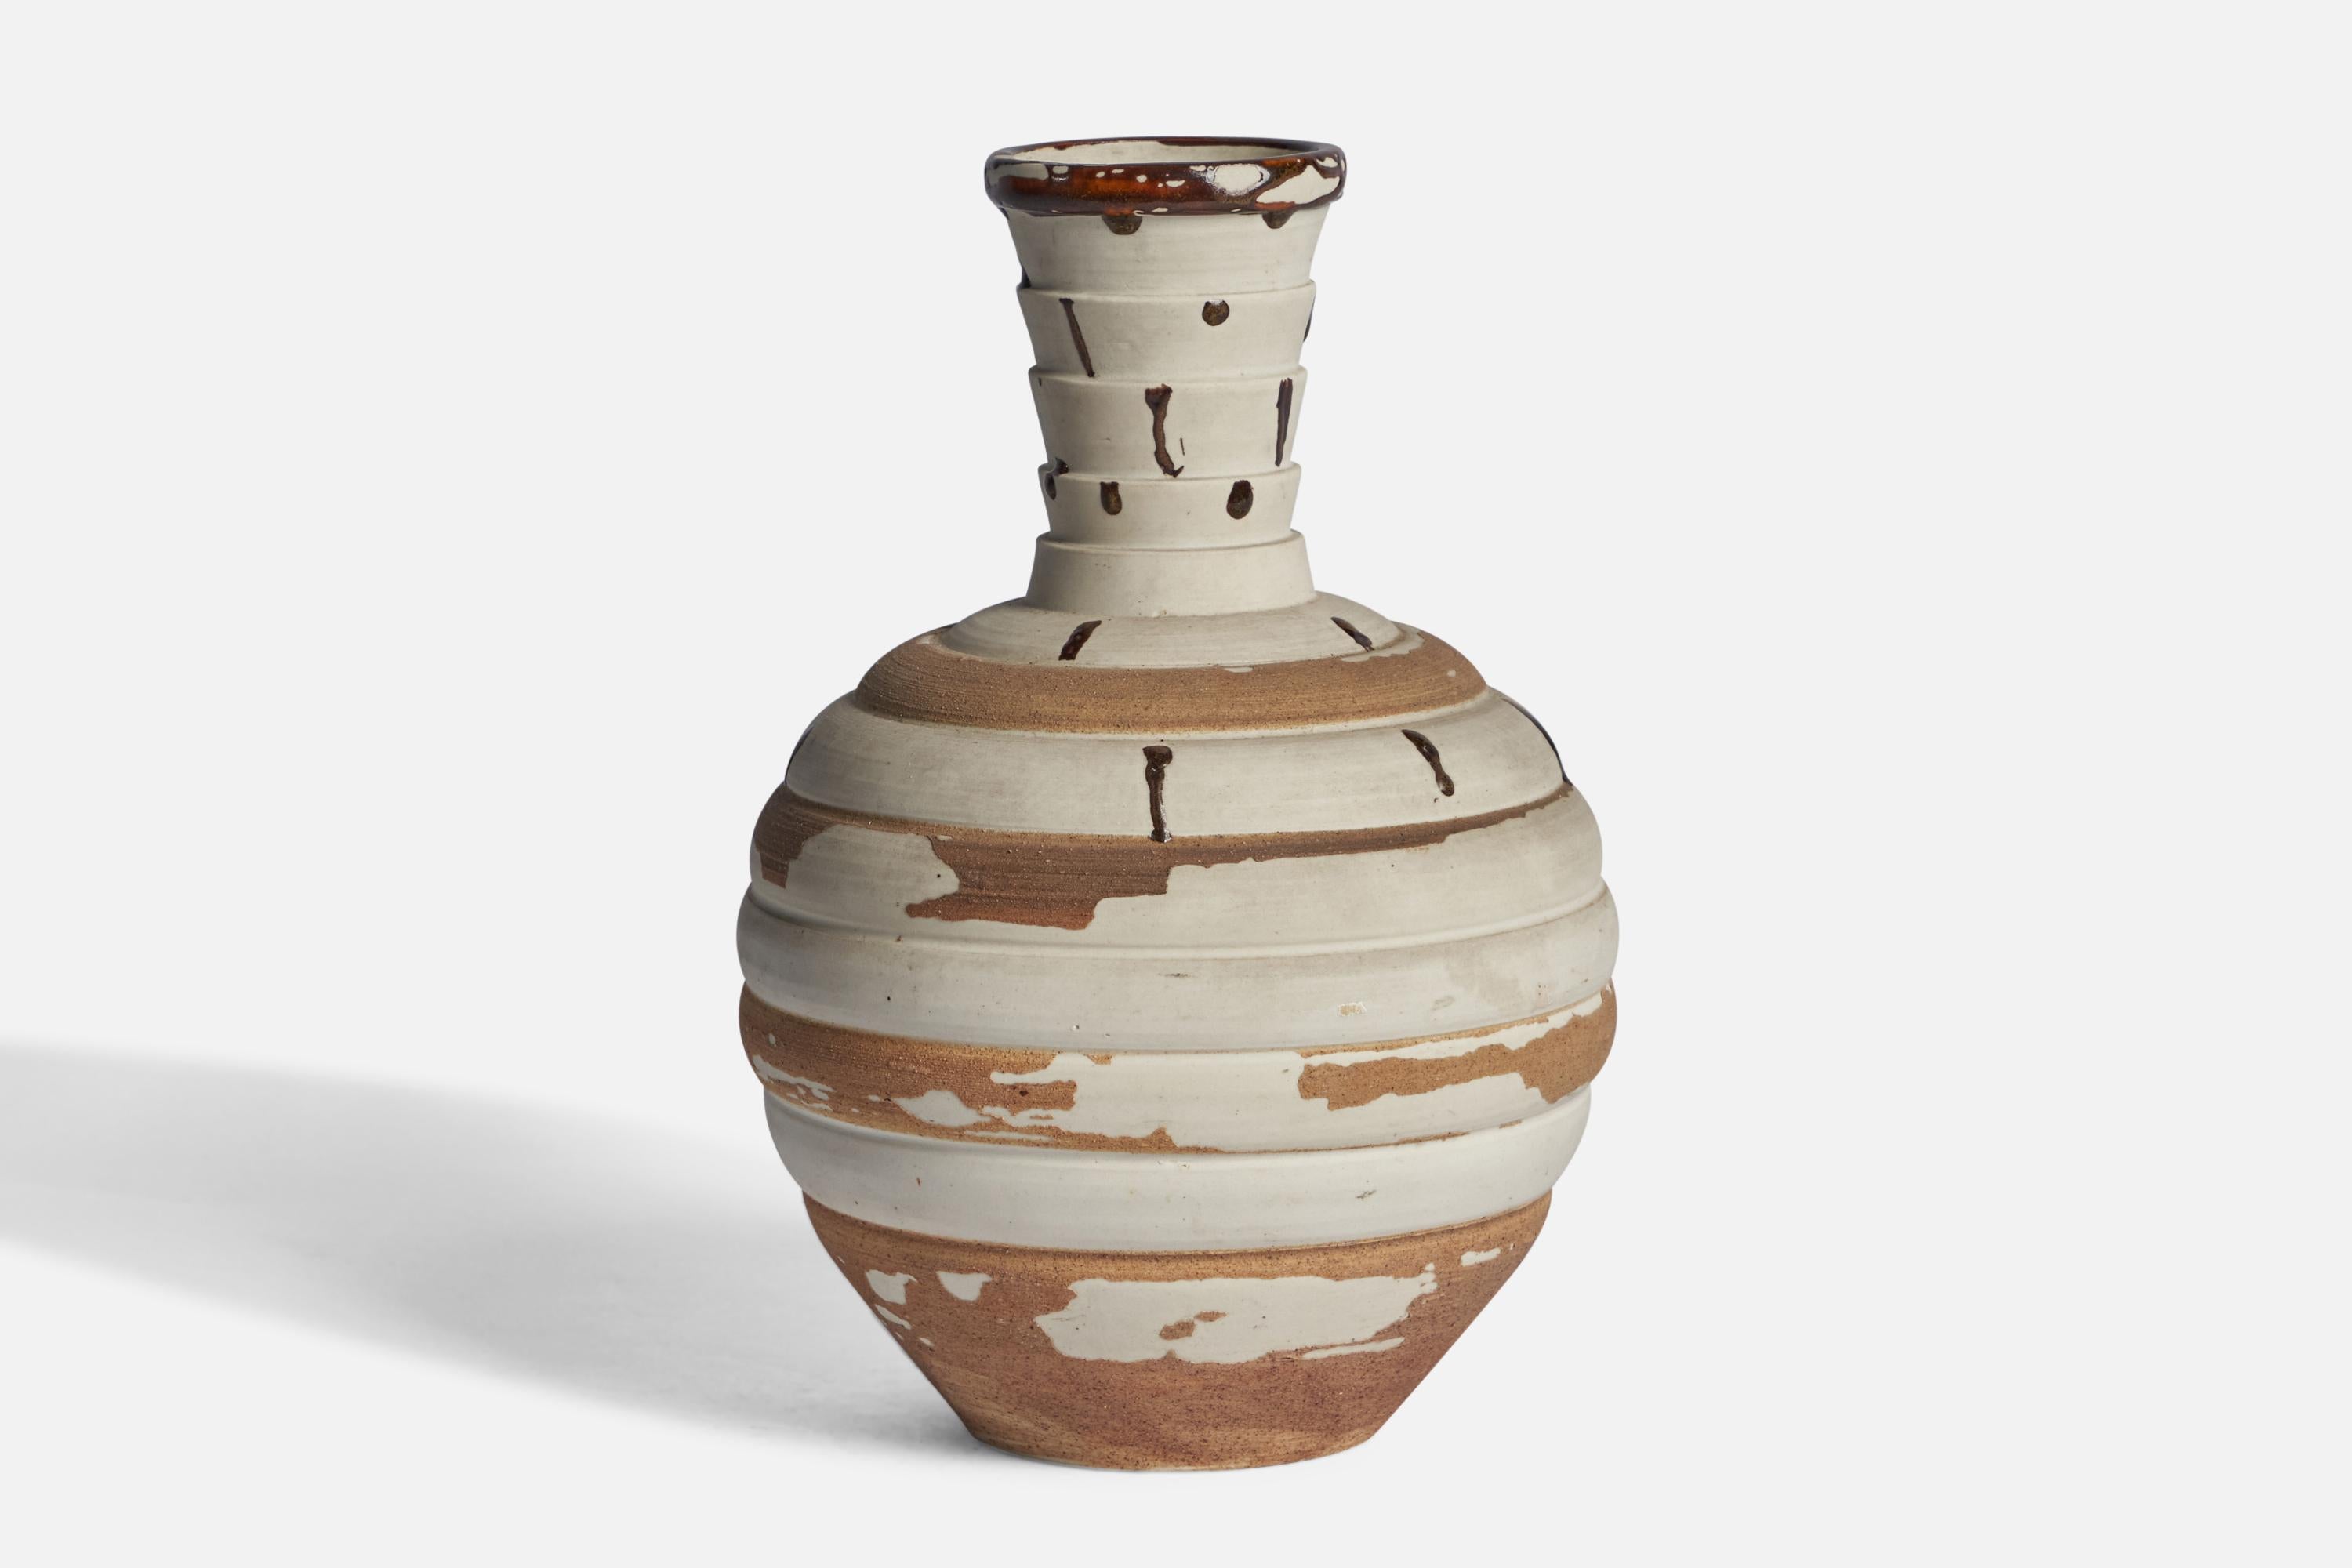 Braun-weiße Vase aus Steingut, entworfen und hergestellt von Sven Bohlin, Höganäs, Schweden, um 1960.